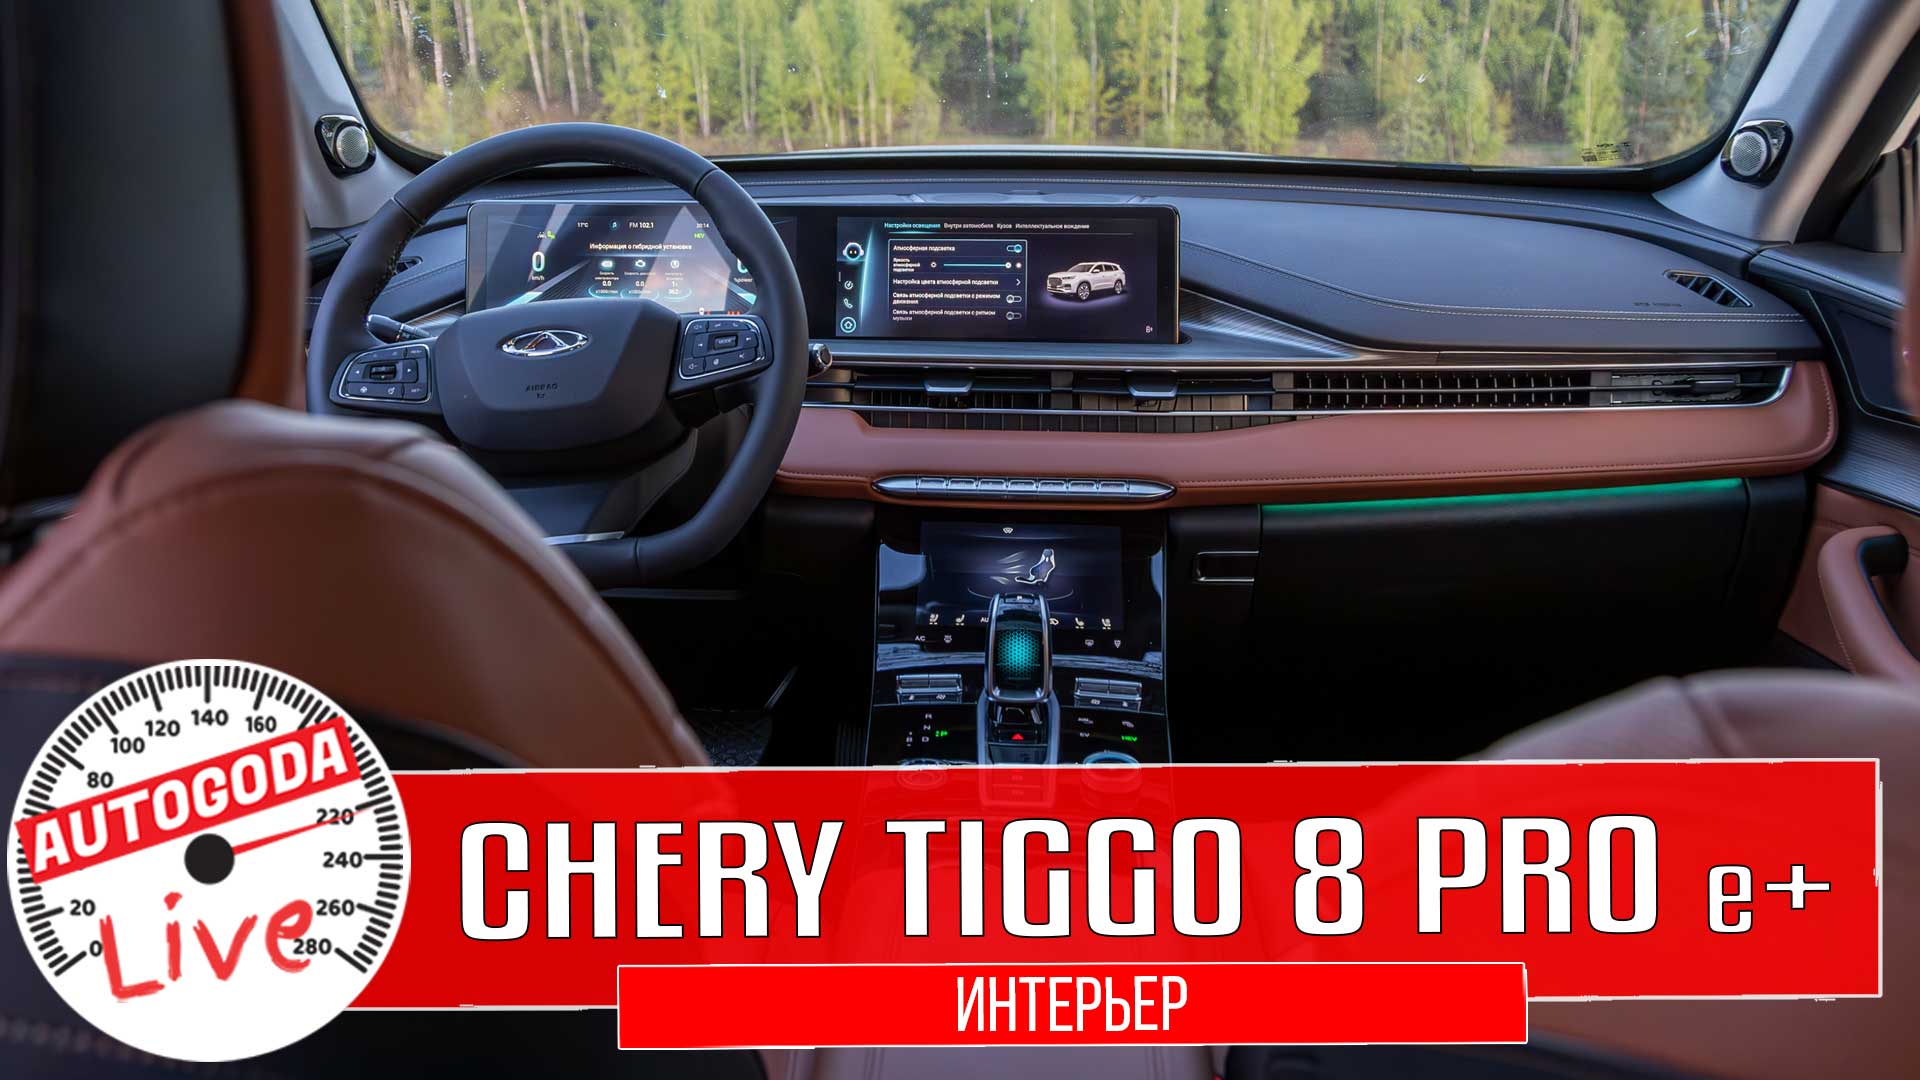 Видео: гибридный Chery Tiggo 8 Pro e+. Что интересного в интерьере?